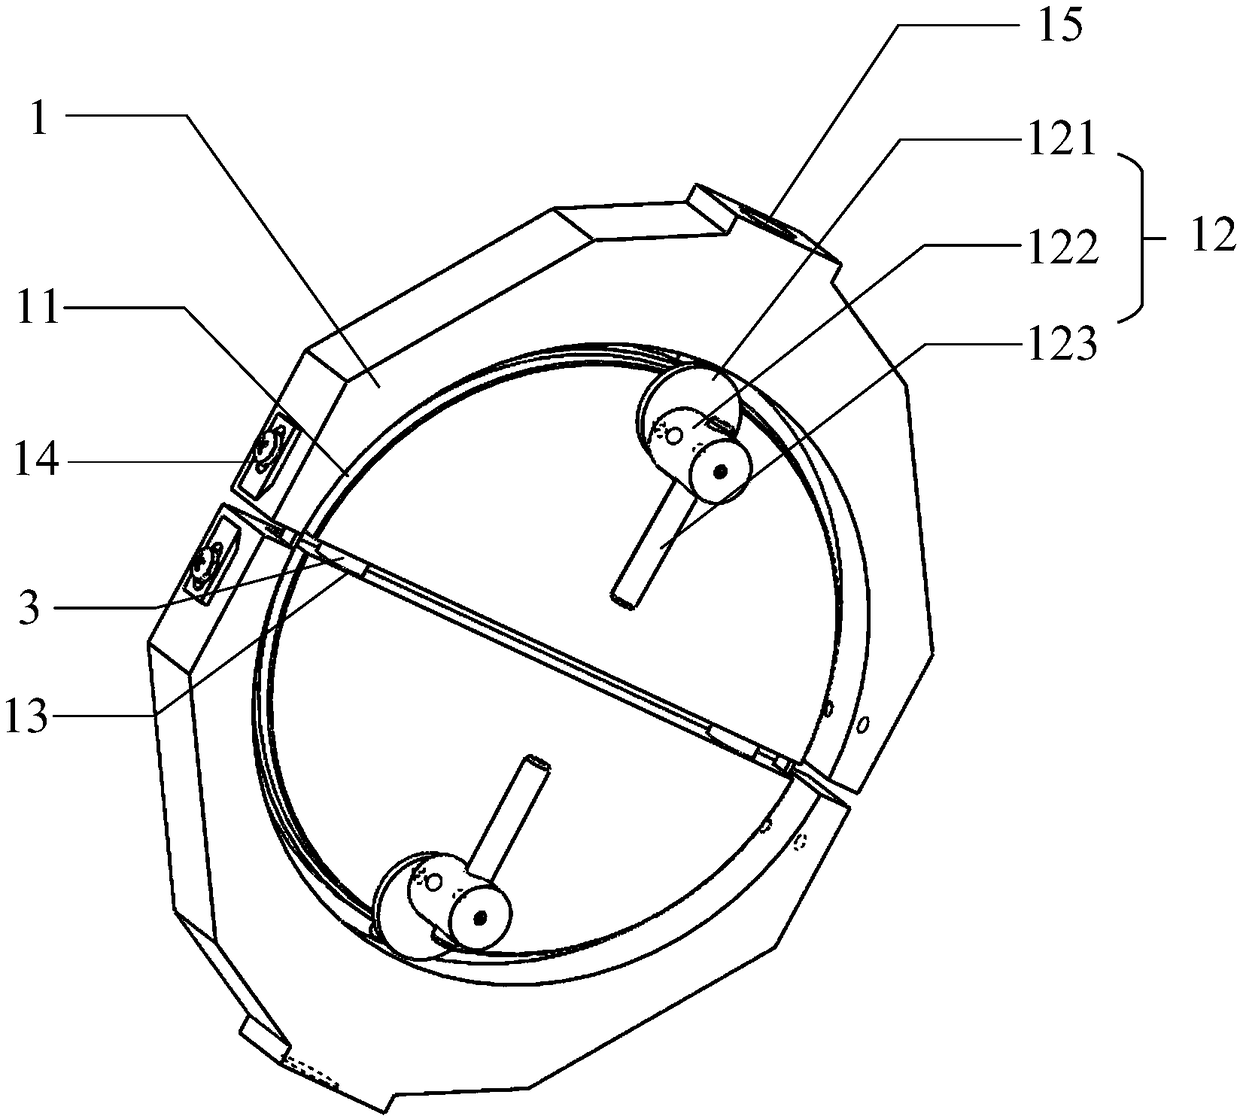 Tensile test fixture for ring specimen